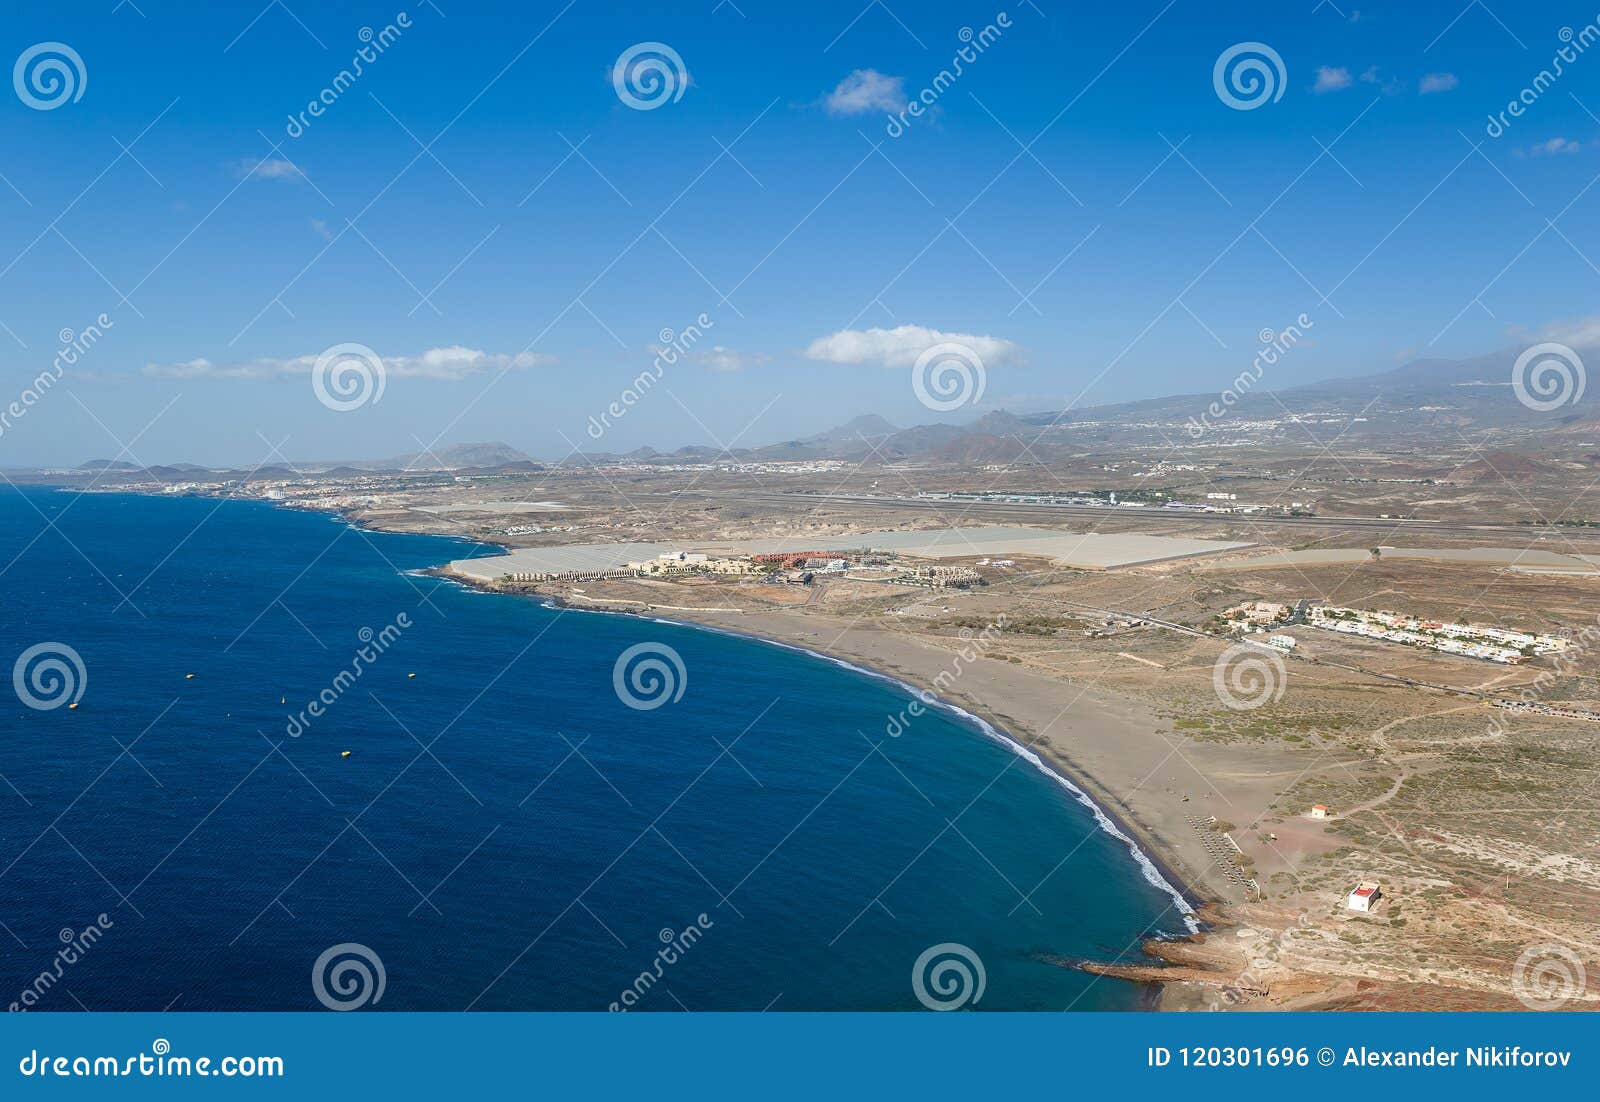 playa de la tejita aerial view